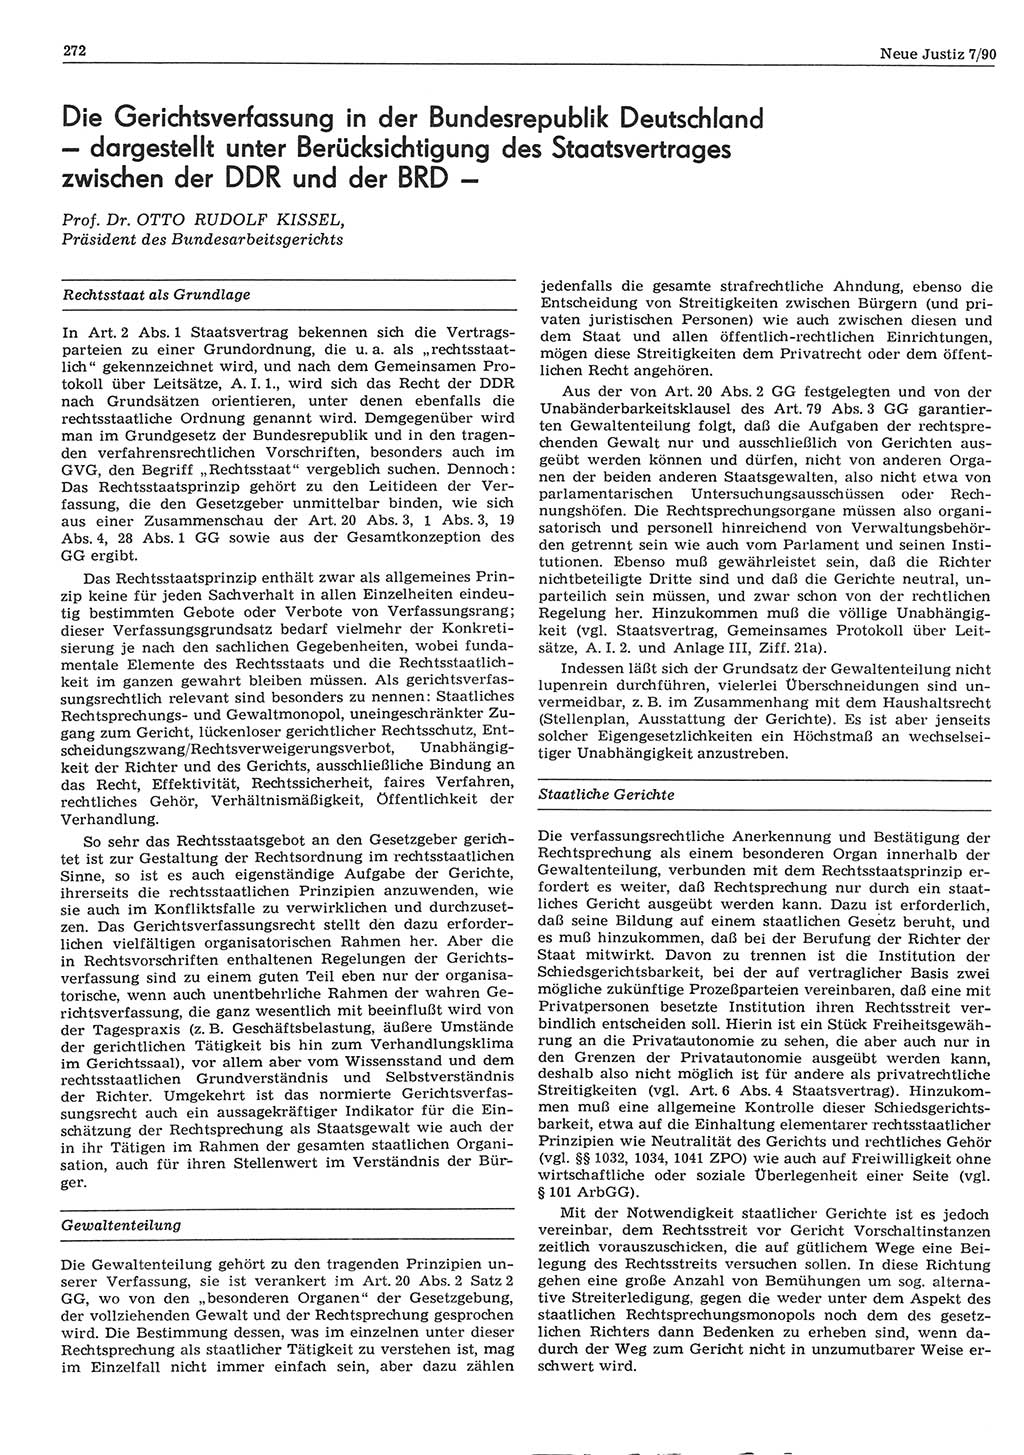 Neue Justiz (NJ), Zeitschrift für Rechtsetzung und Rechtsanwendung [Deutsche Demokratische Republik (DDR)], 44. Jahrgang 1990, Seite 272 (NJ DDR 1990, S. 272)